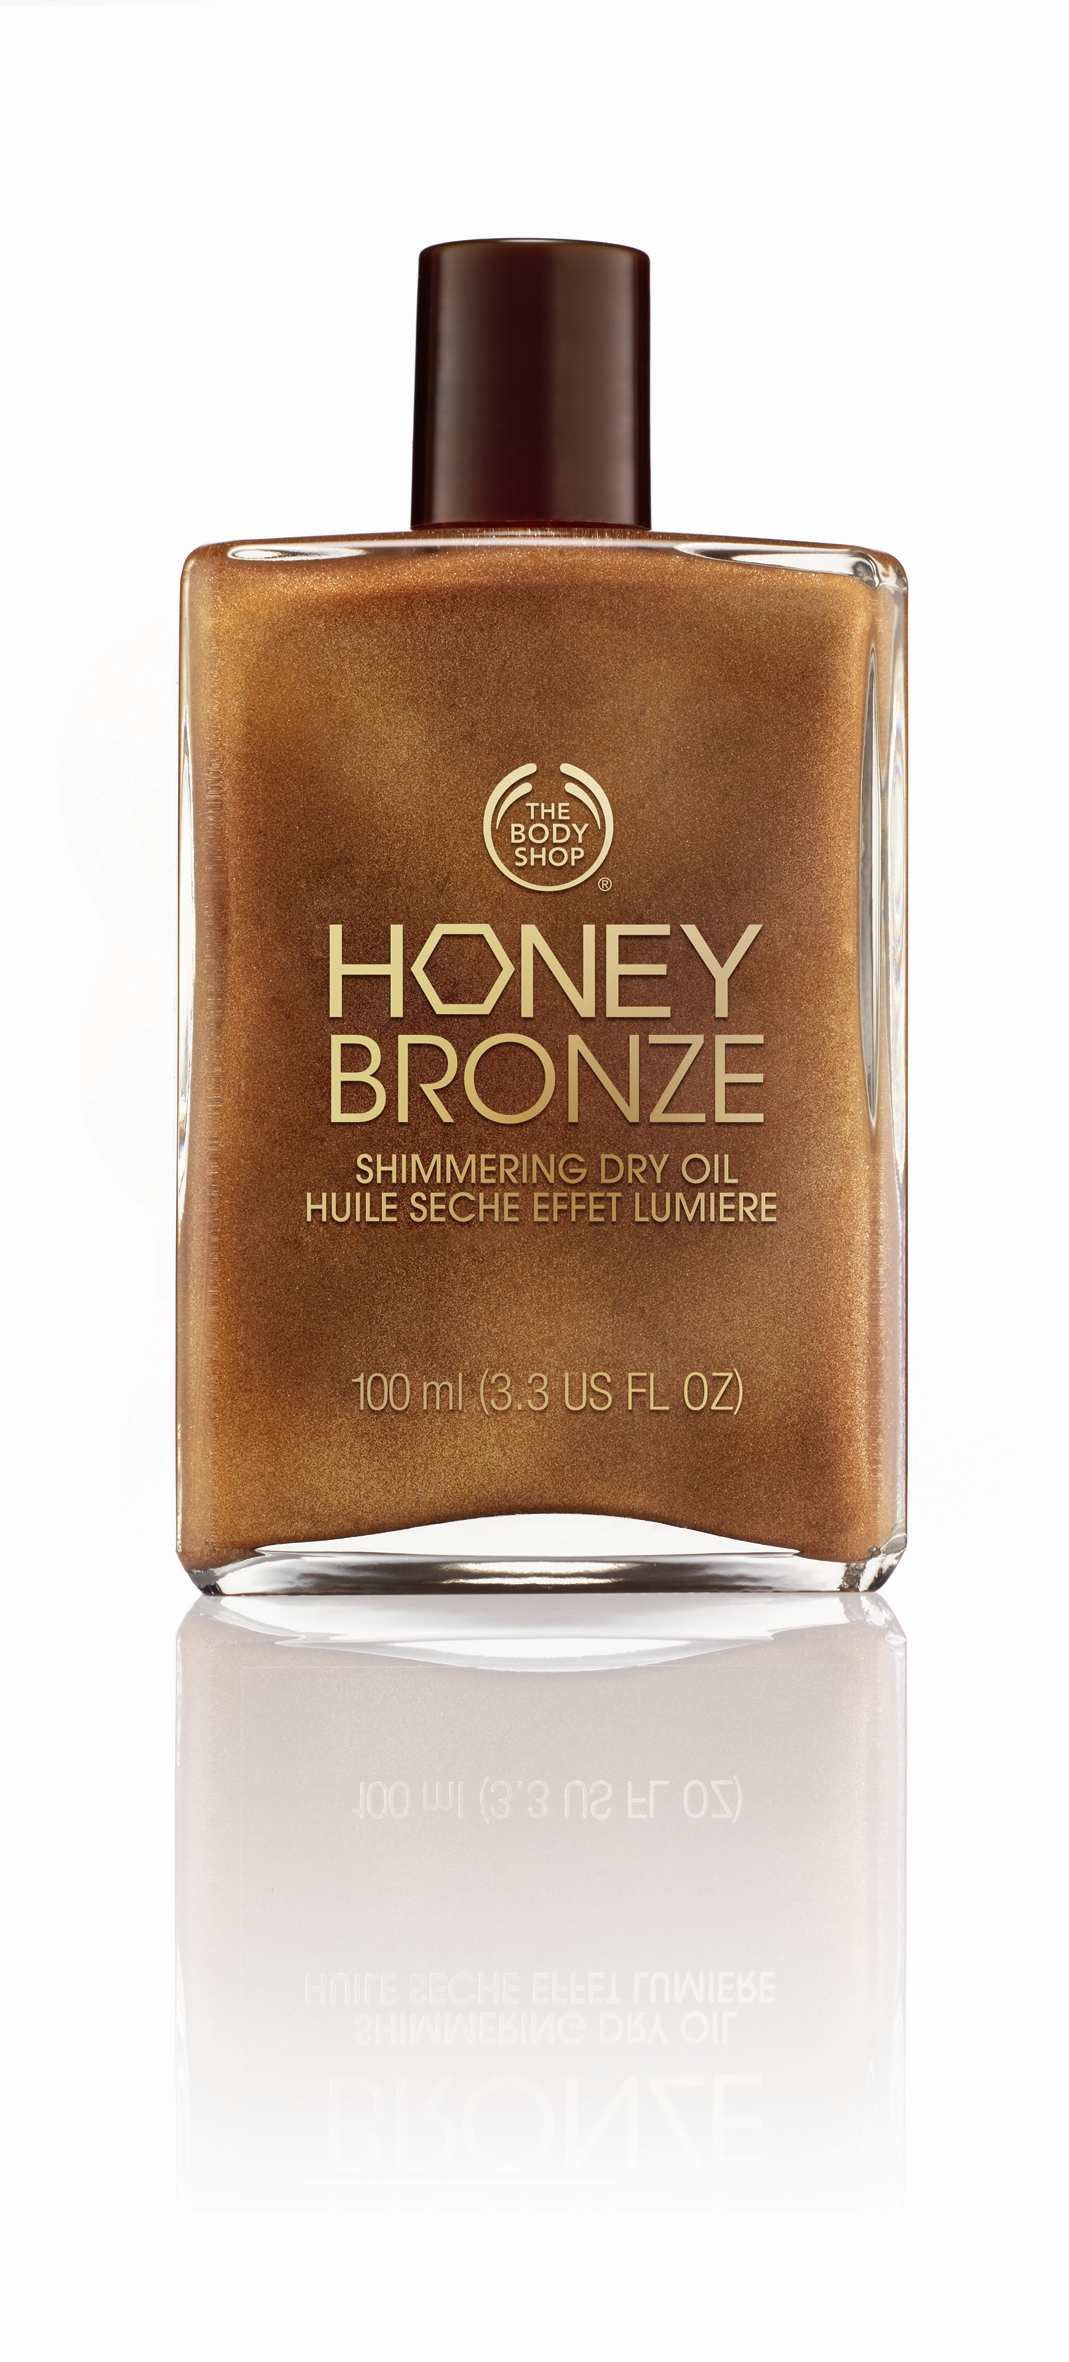 Honey Bronze Shimmering Dry Oil.JPG